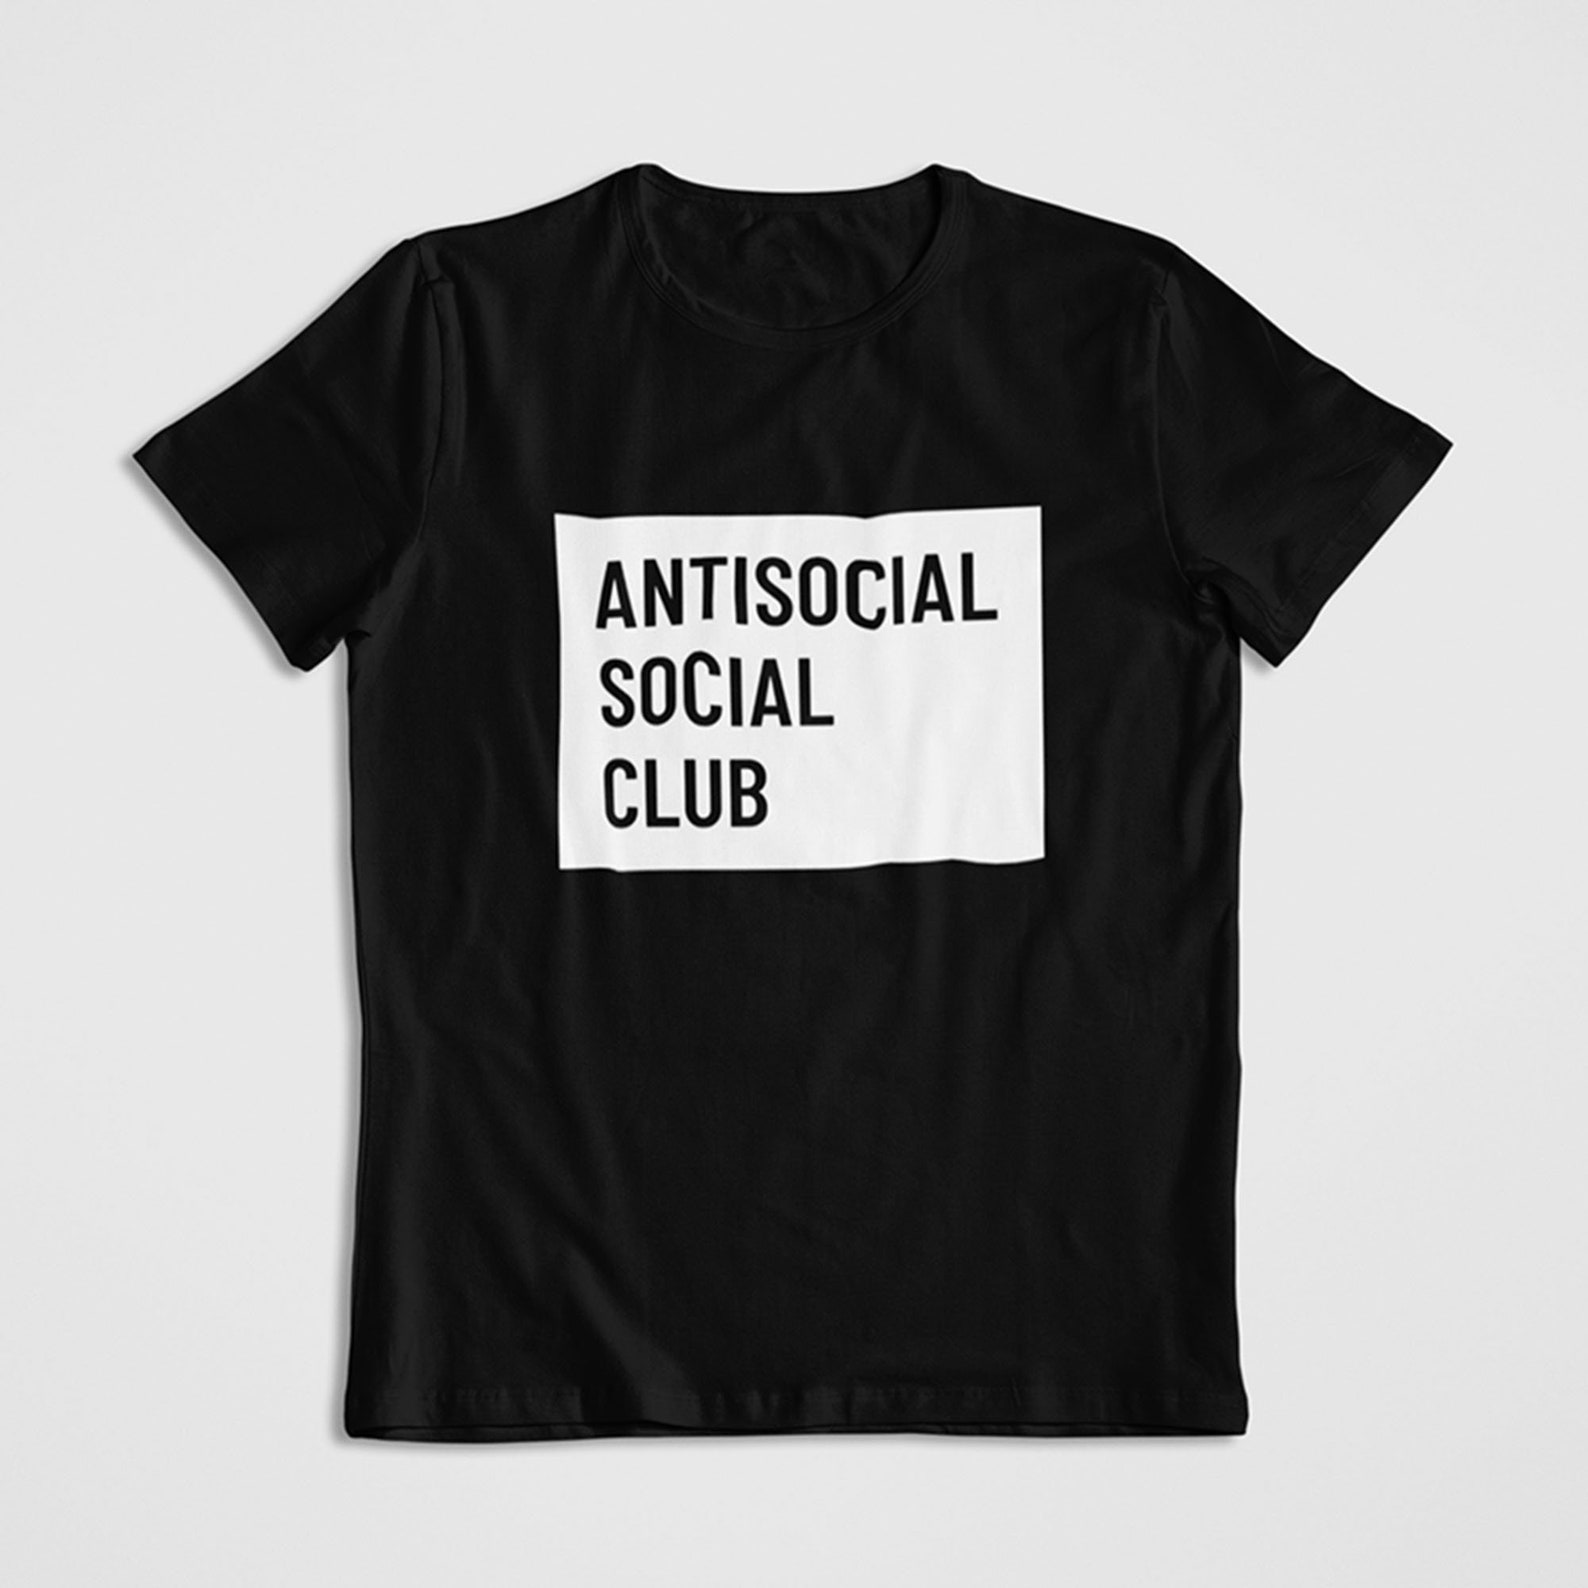 Antisocial Social Club t-shirt Funny t-shirt | Etsy